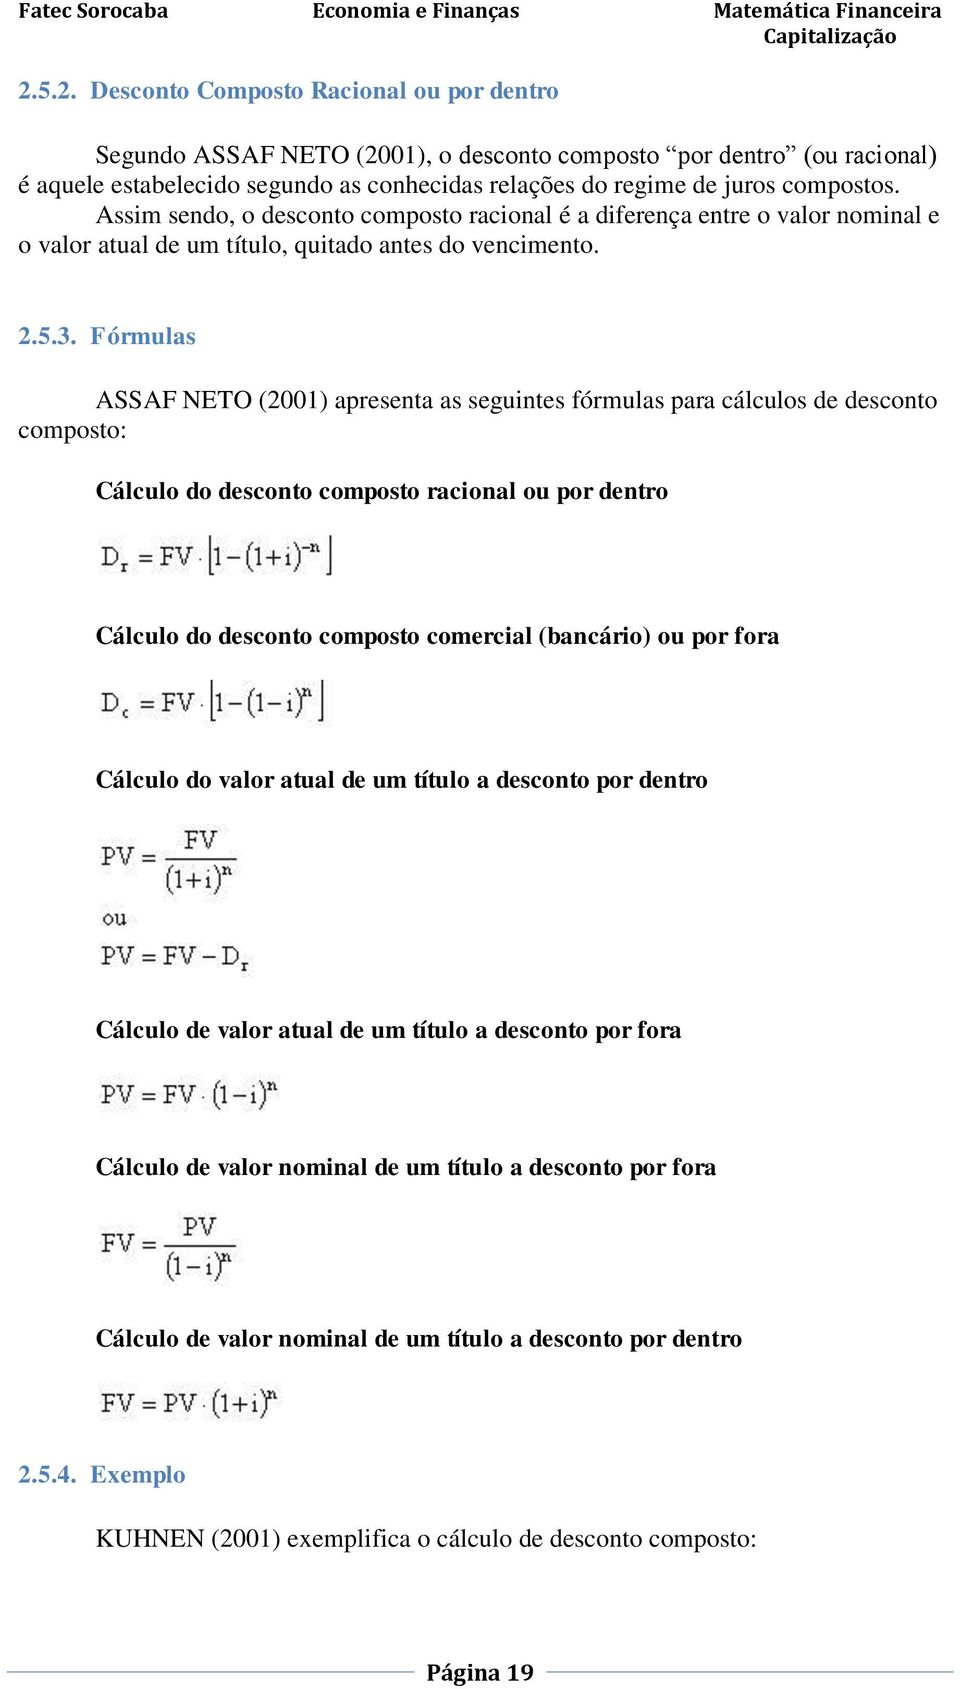 Fórmulas ASSAF NETO (2001) apresenta as seguintes fórmulas para cálculos de desconto composto: Cálculo do desconto composto racional ou por dentro Cálculo do desconto composto comercial (bancário) ou